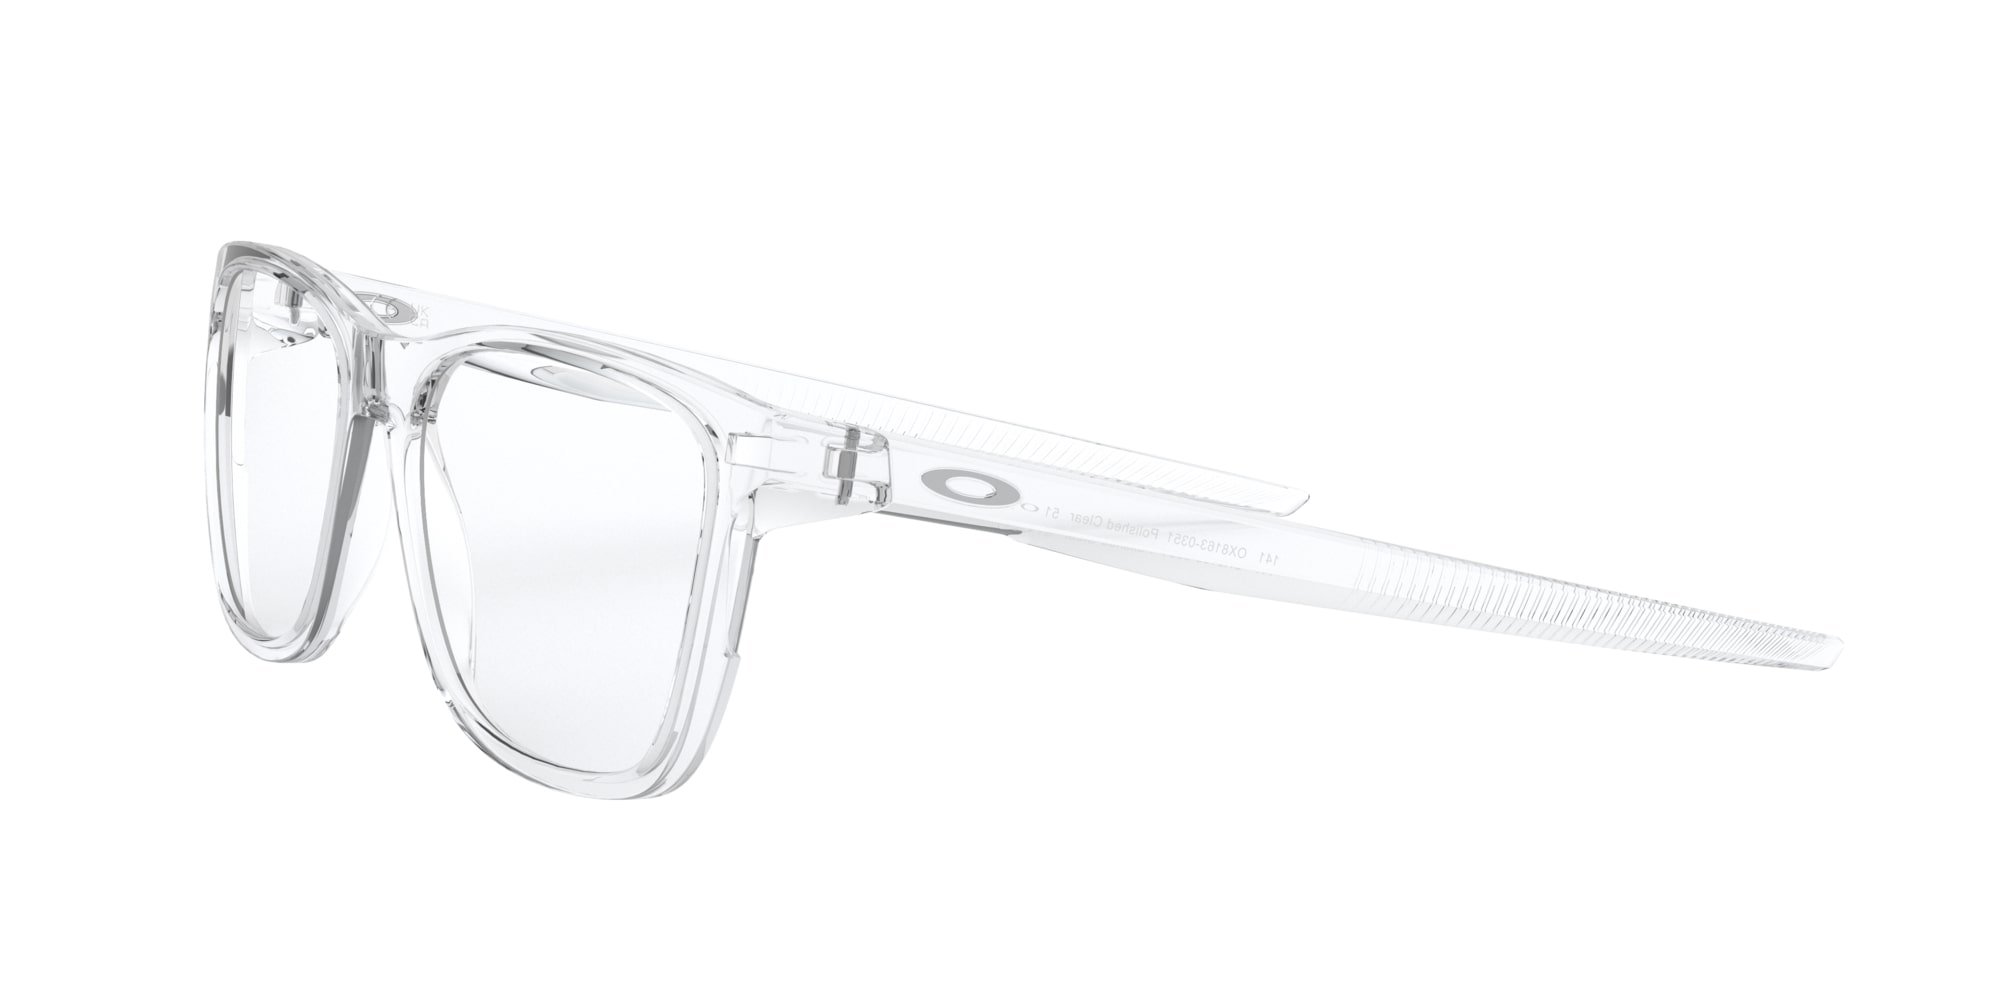 Das Bild zeigt die Korrektionsbrille OX8163 816303 von der Marke Oakley  in  transparent glänzend.